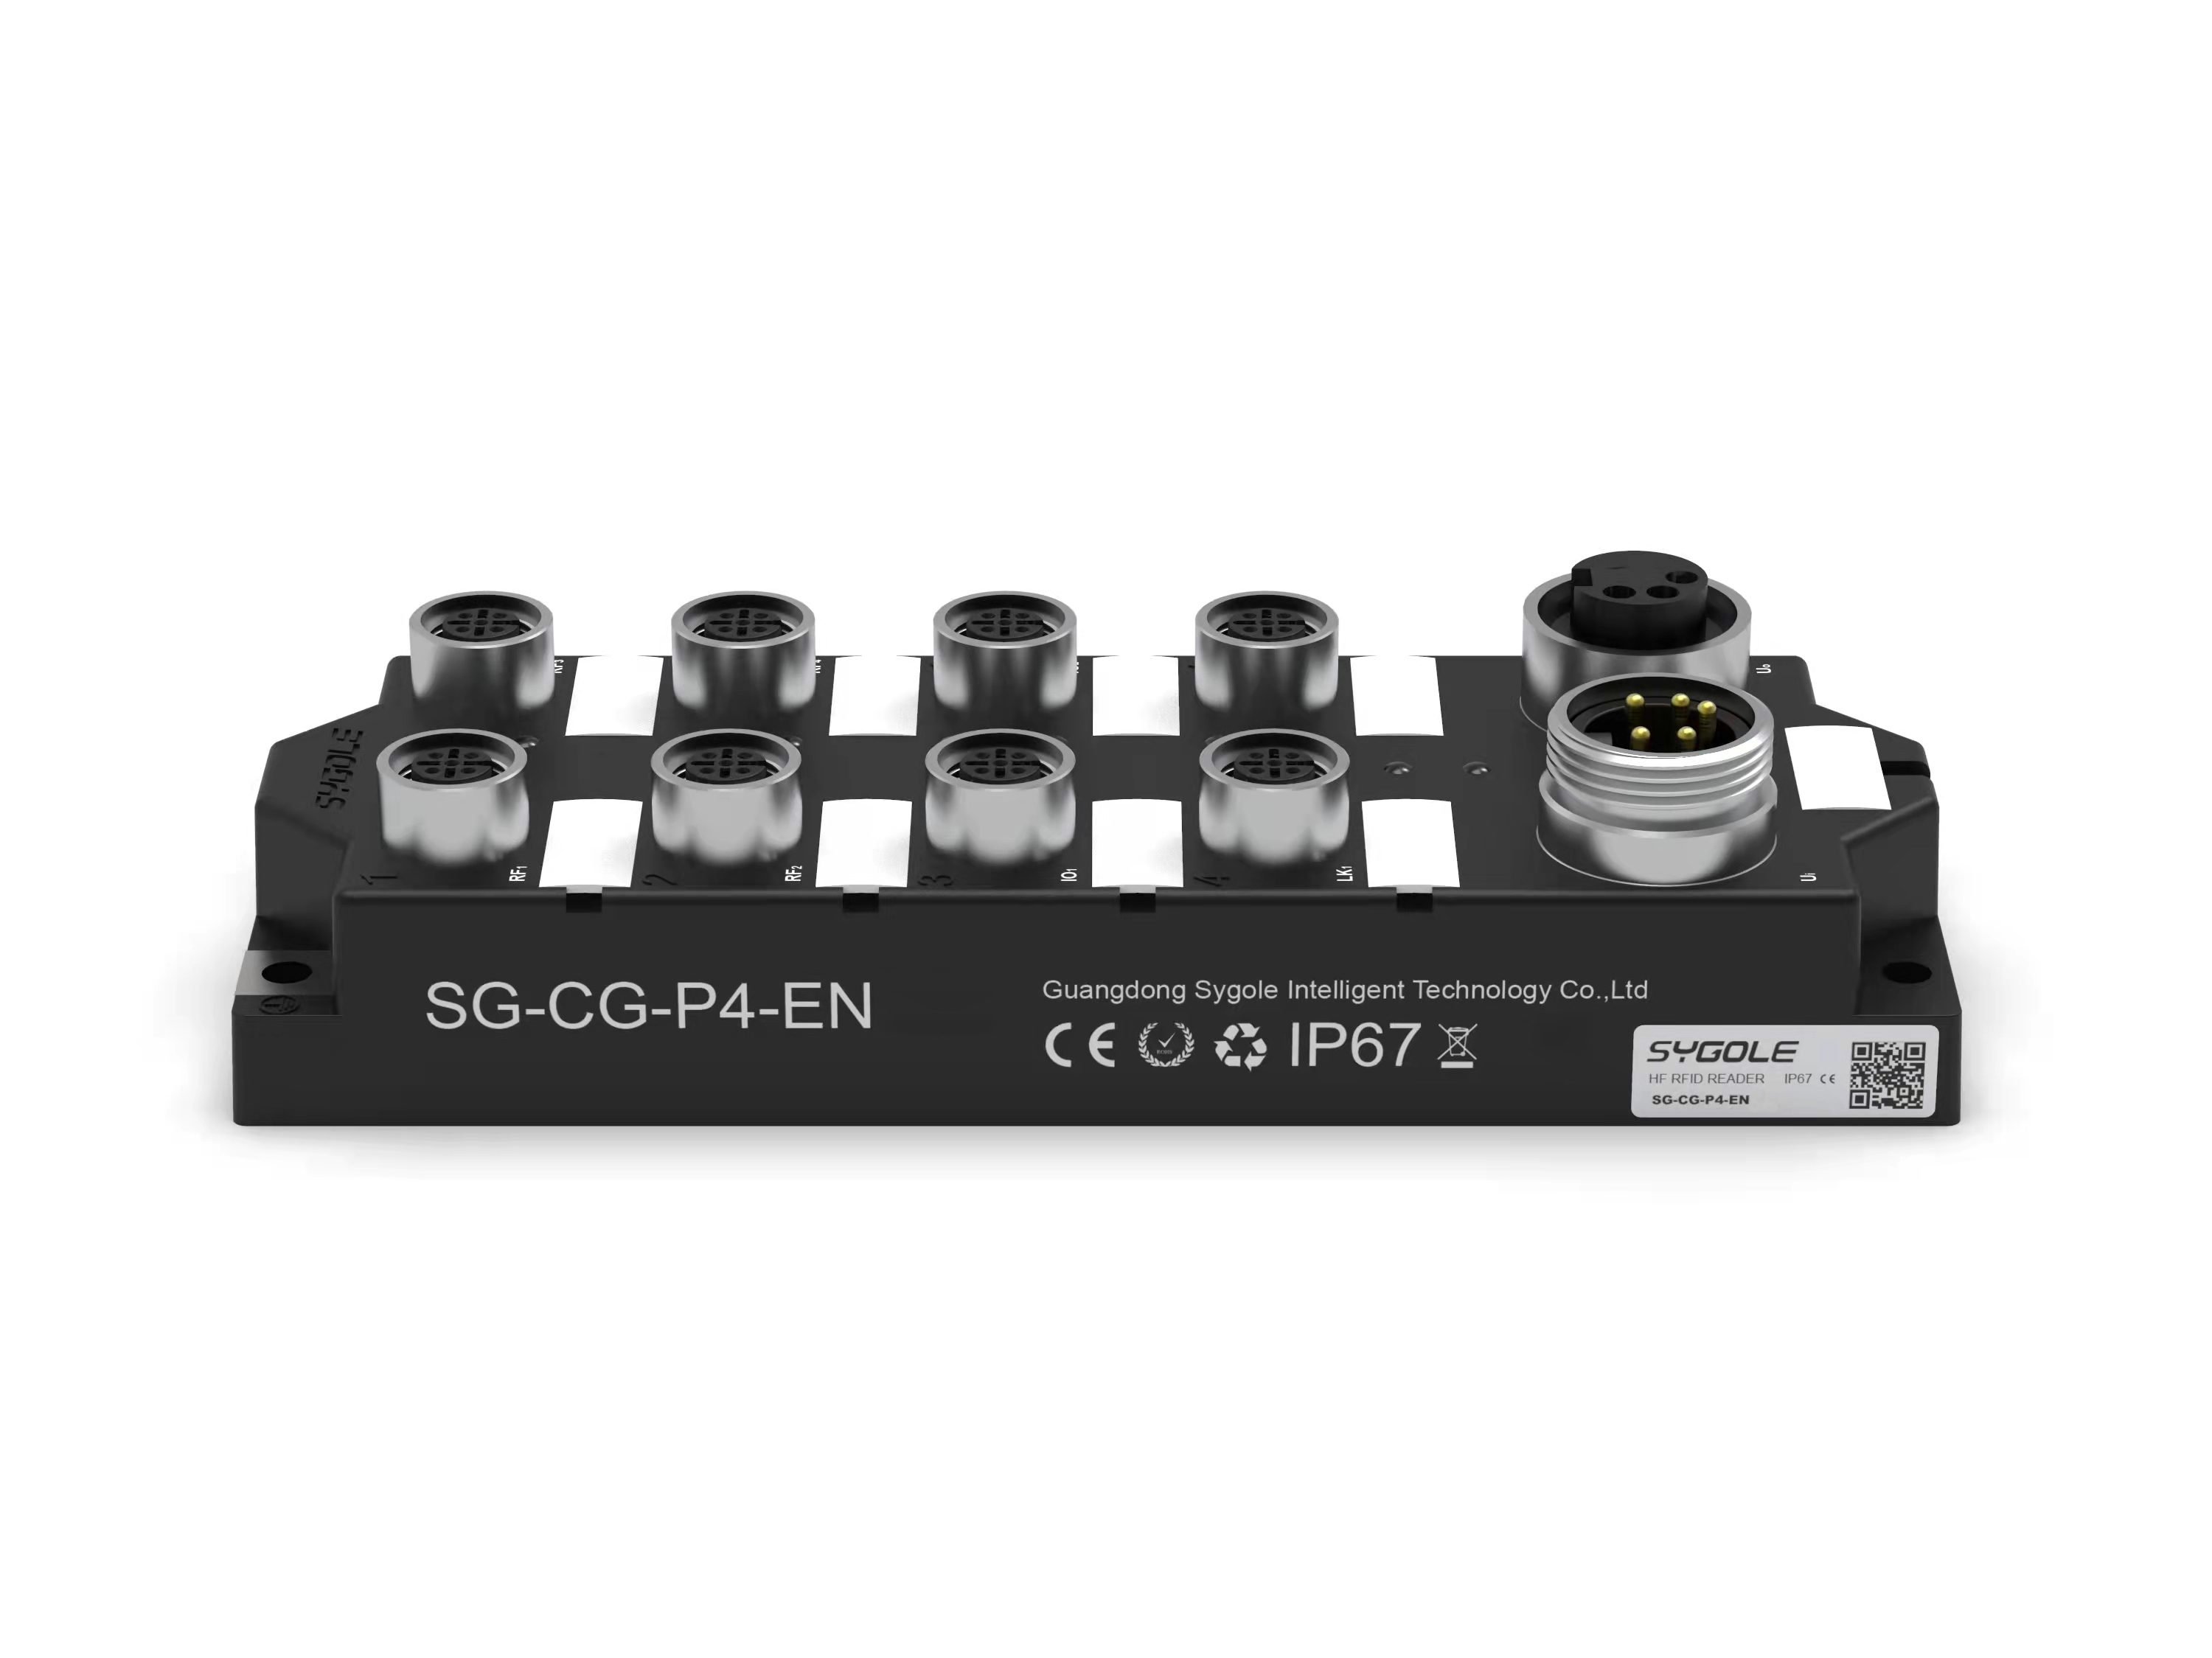 SG-CG-P4-EN 总线协议控制器